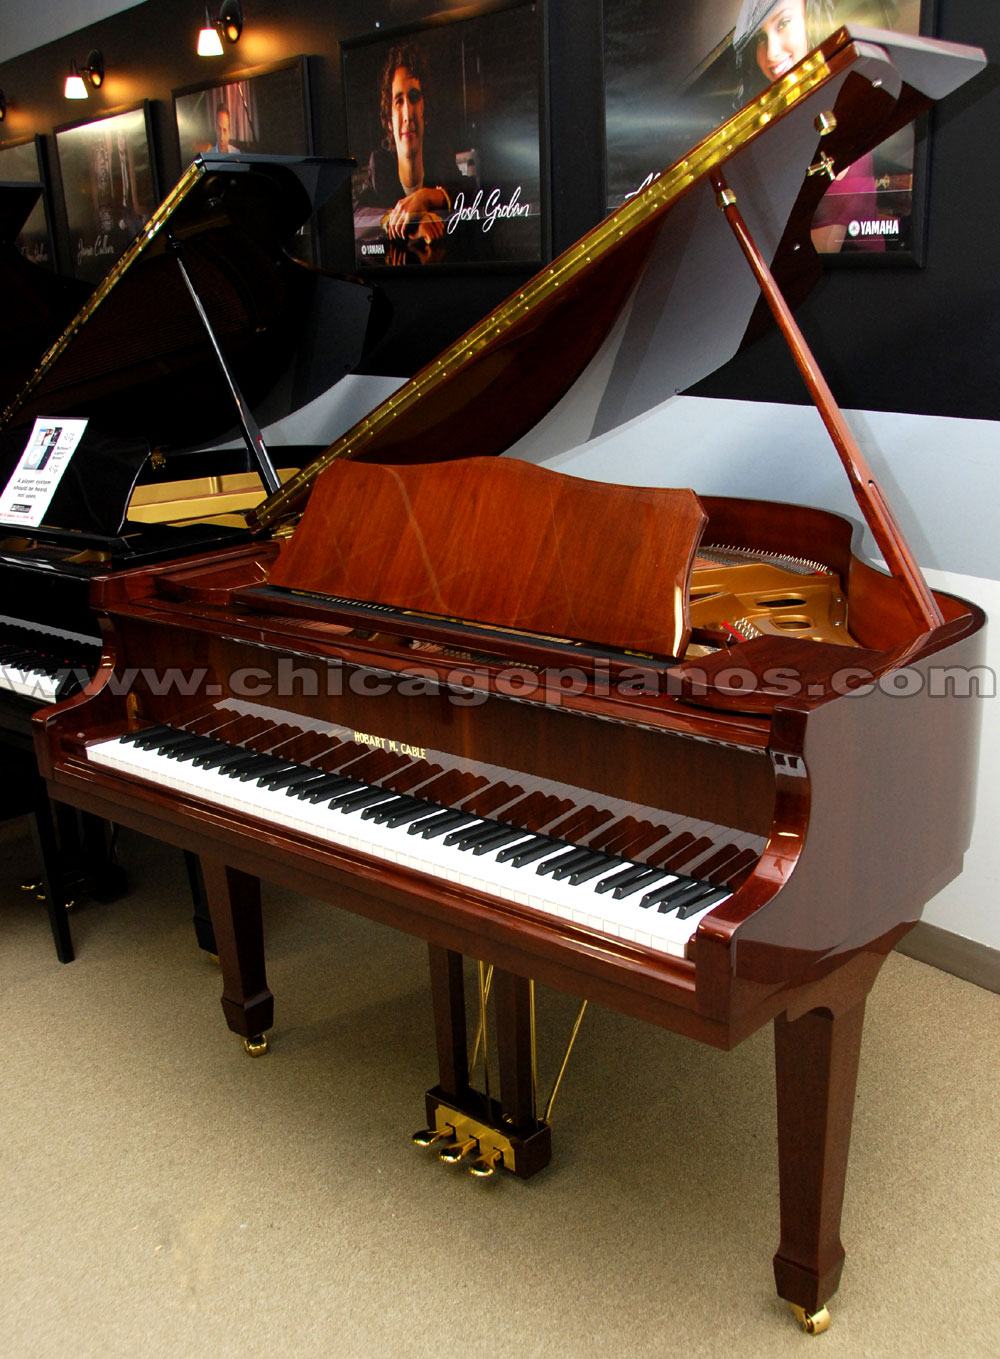 Hobart M Cable Grand Pianos from Chicago Pianos . com